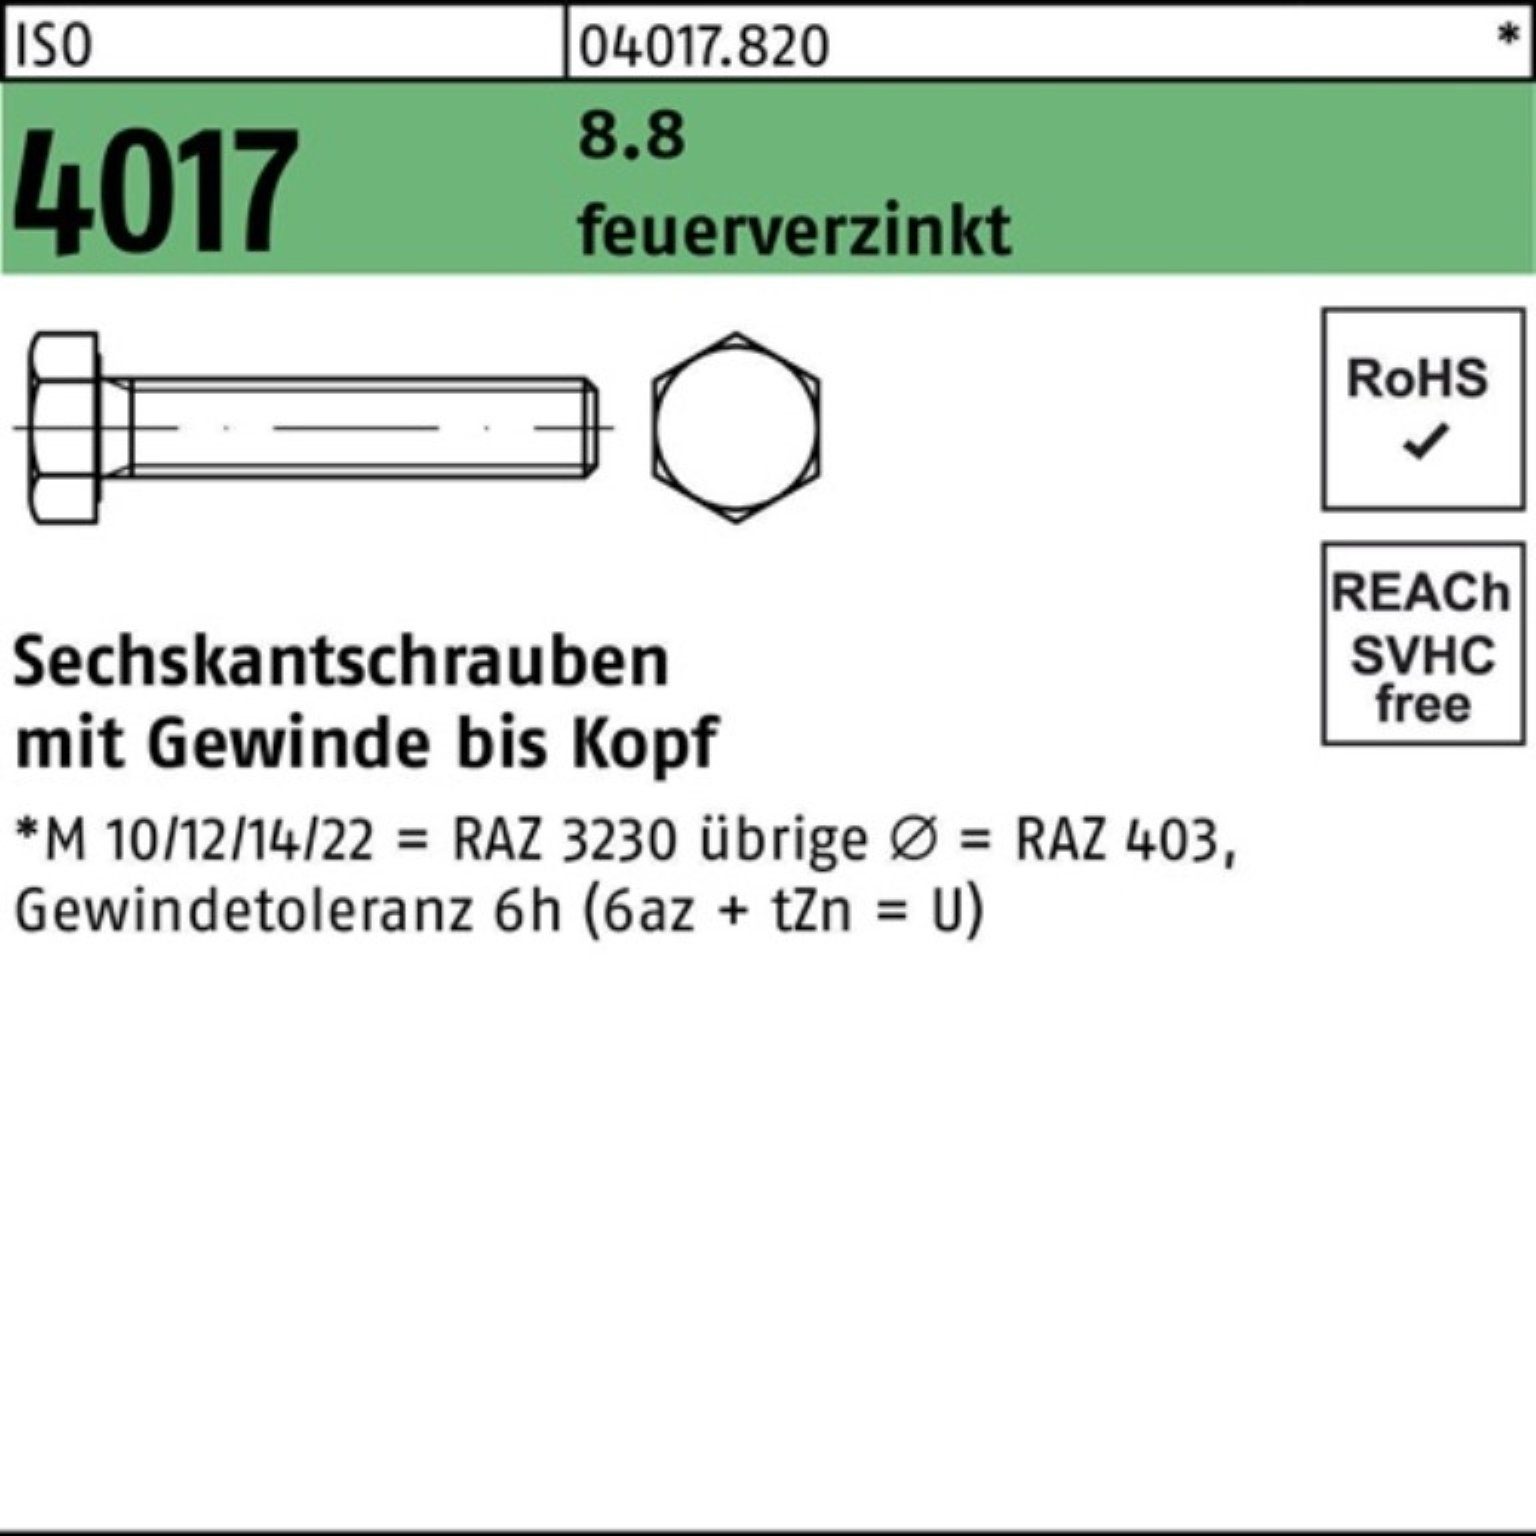 Bufab Sechskantschraube 100er Pack Sechskantschraube St VG feuerverz. 4017 ISO 25 M20x 8.8 60